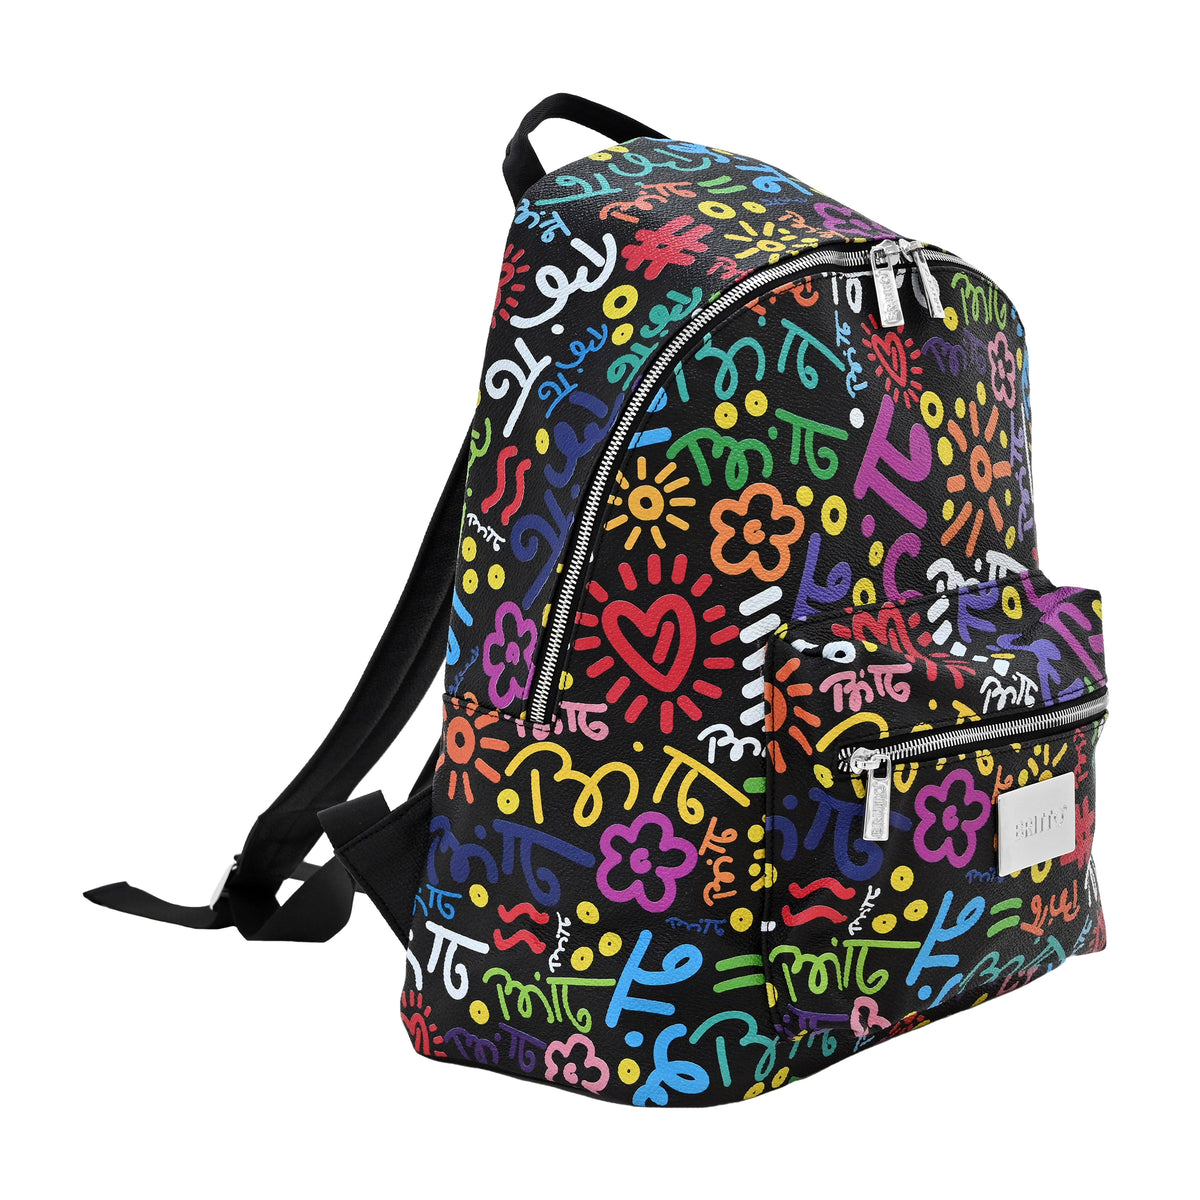 Colorful Graffiti Bag